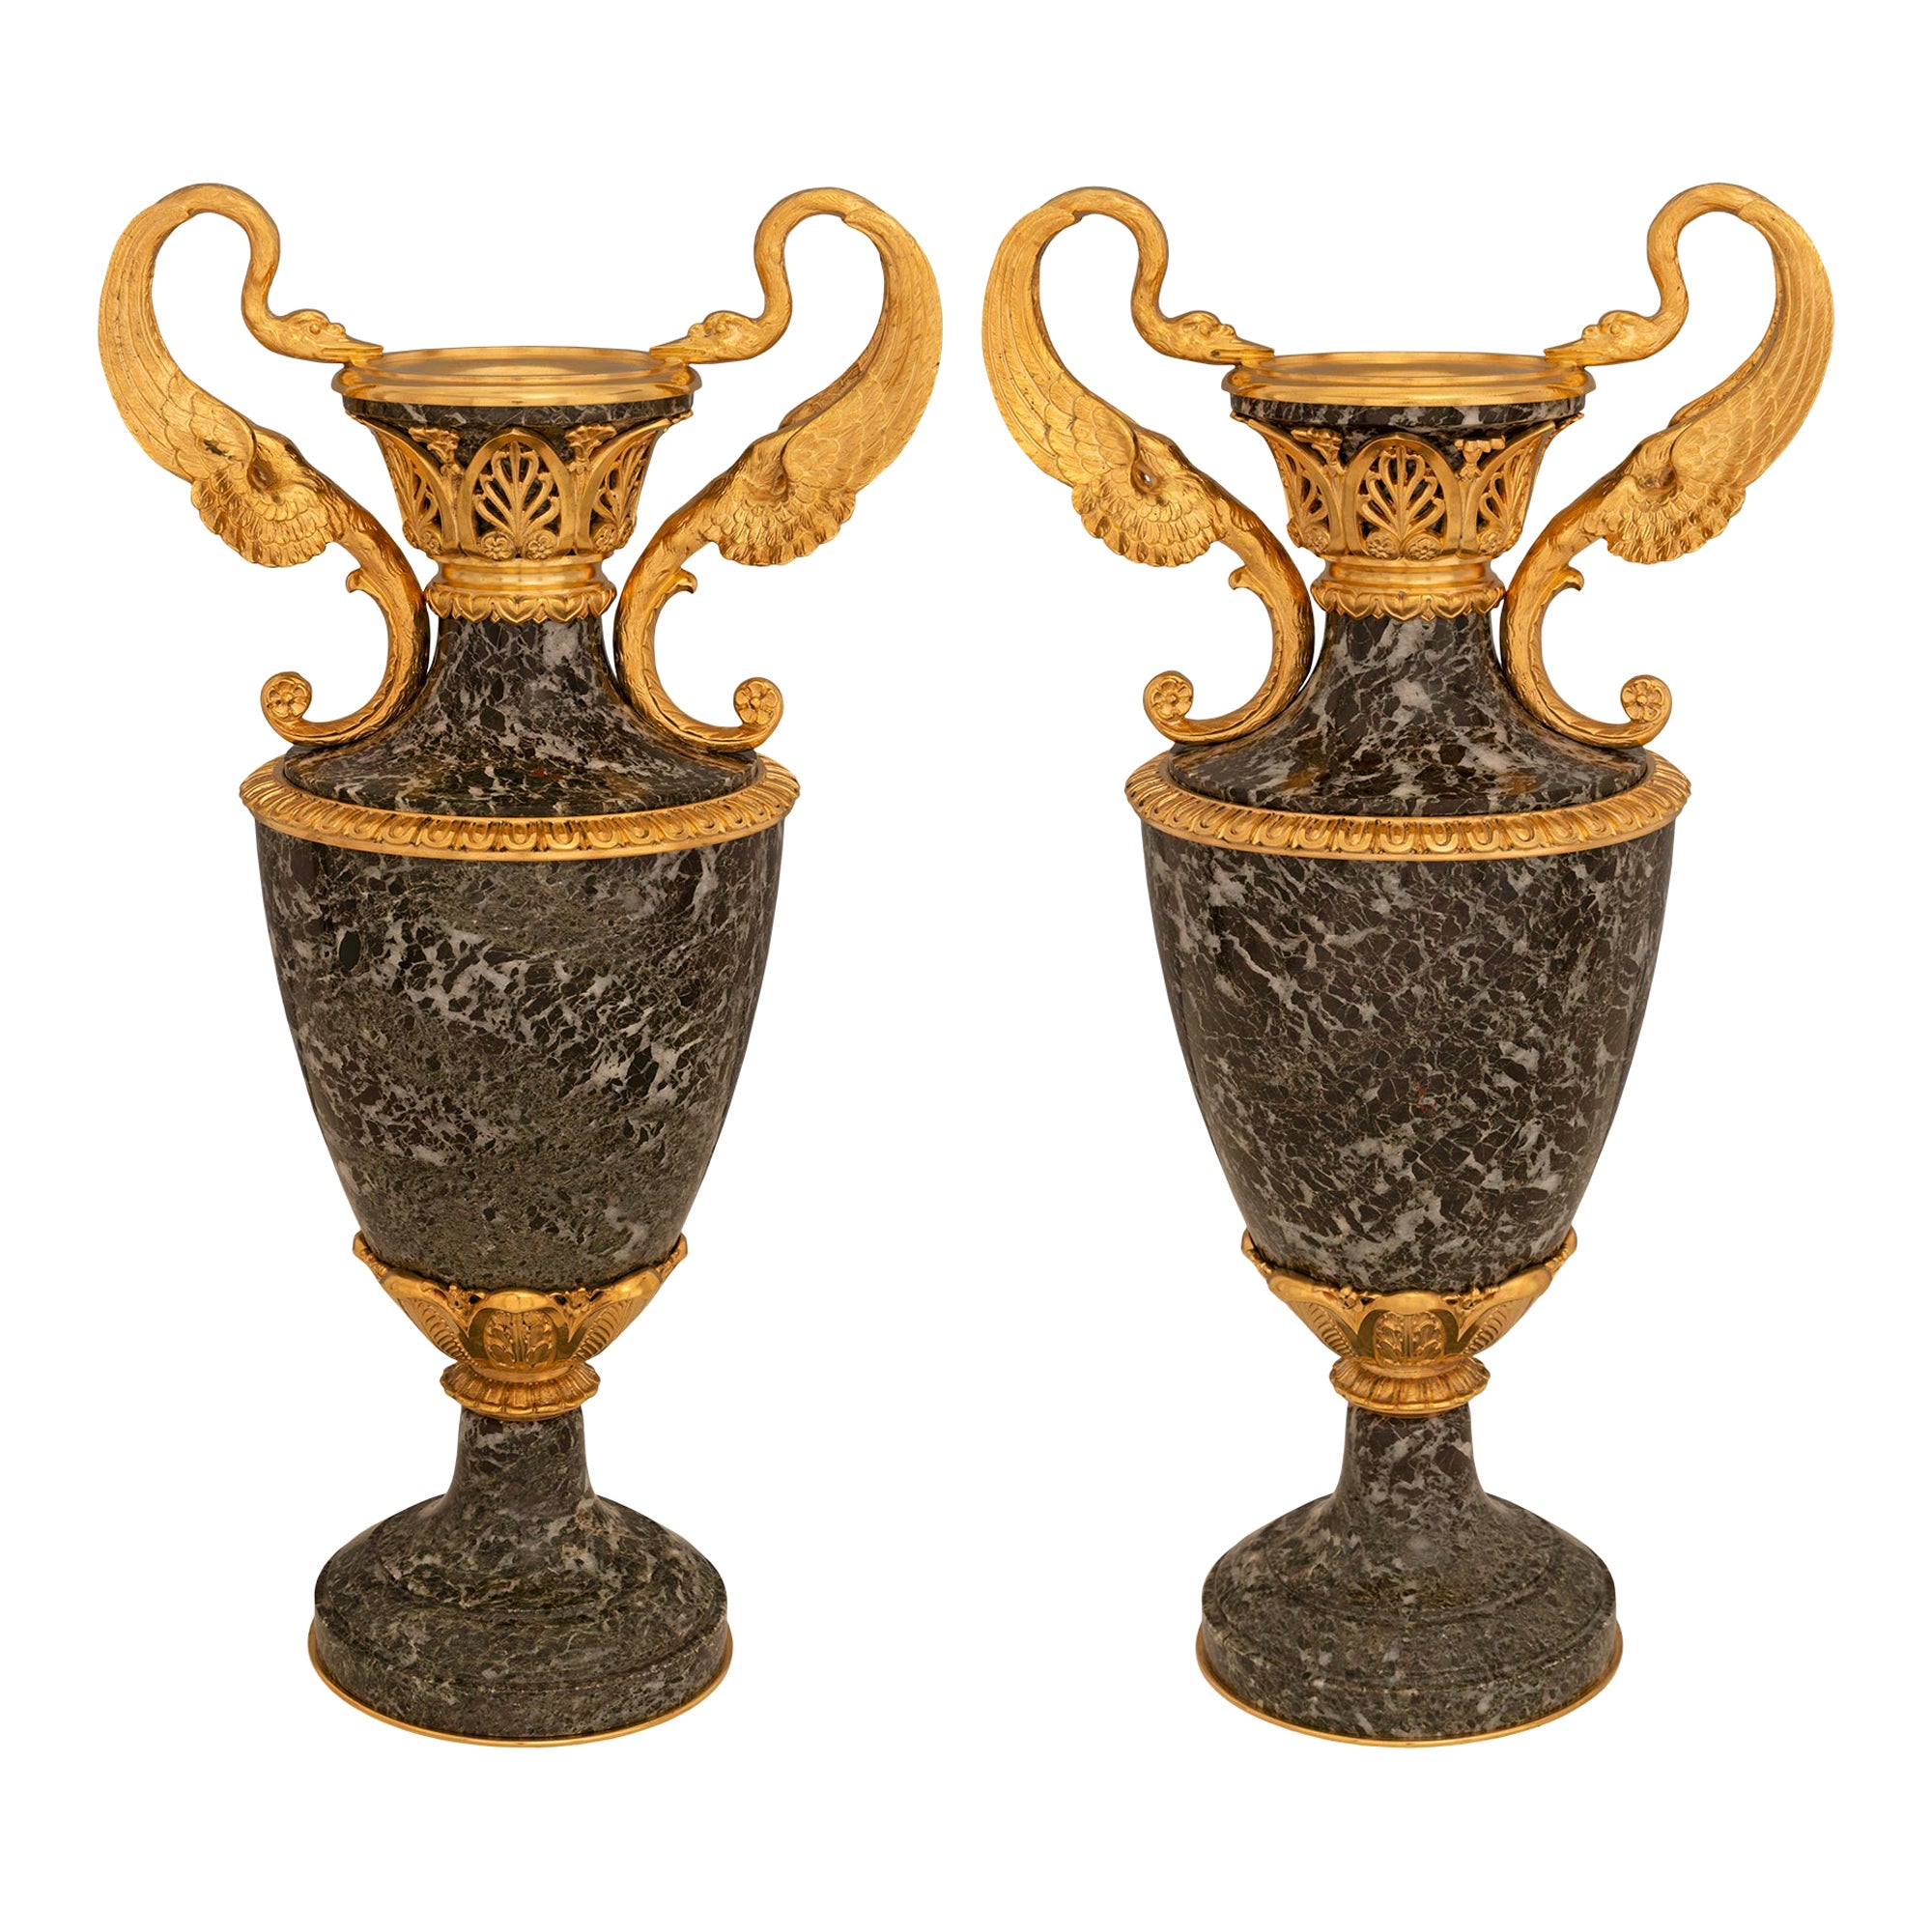 Paire d'urnes en marbre vert et bronze doré d'époque Belle Époque du XIXe siècle